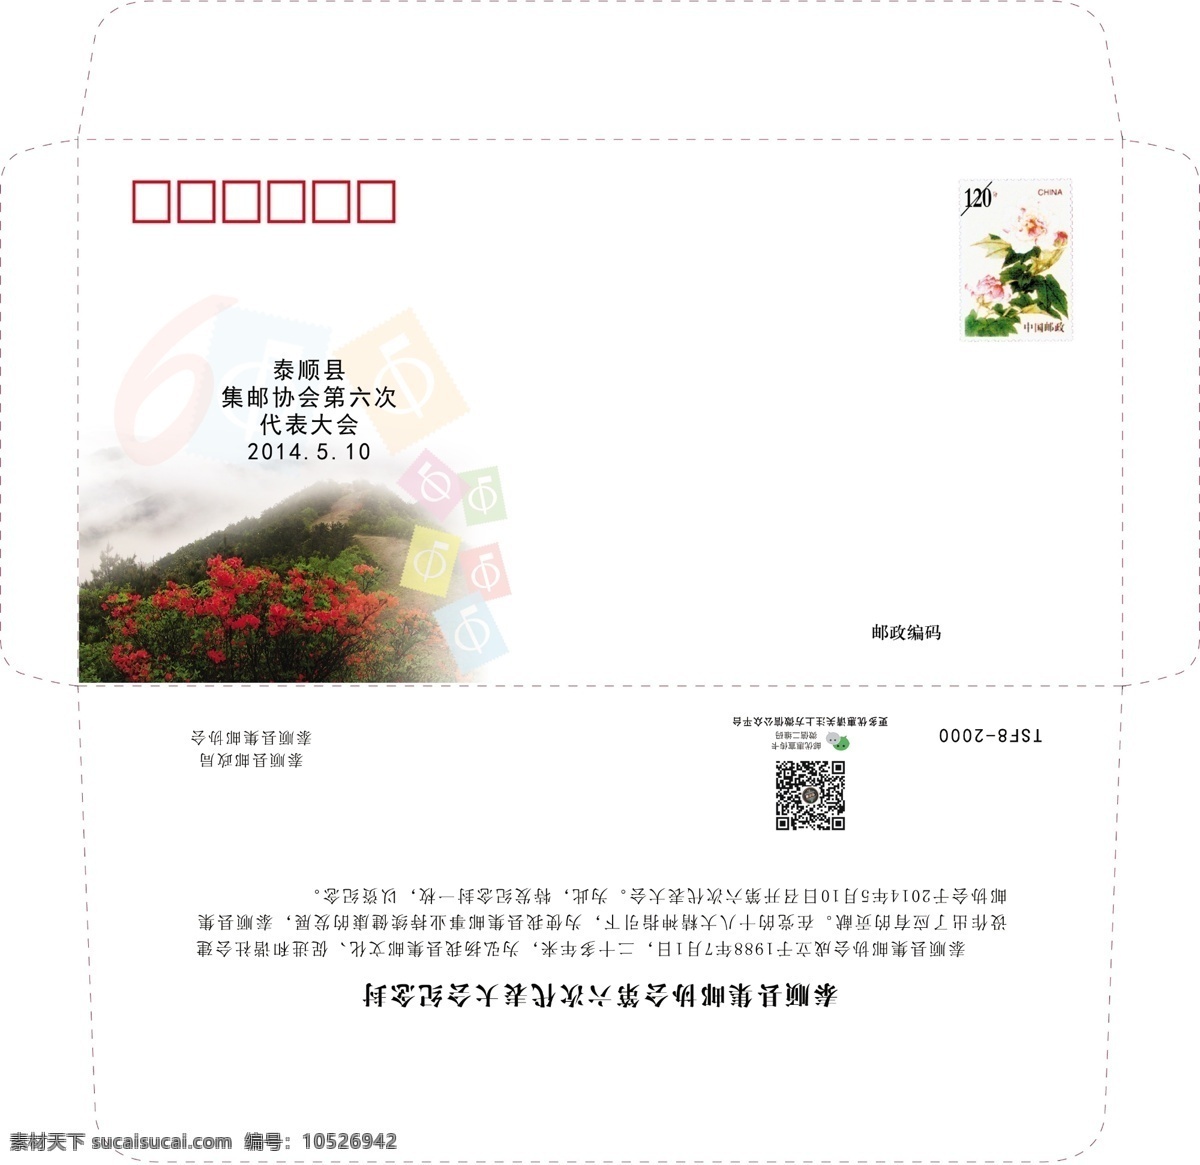 集邮 协会 号 信封 中国 邮票 杜鹃 6号标准封 邮优惠标志 上下开口 包装设计 广告设计模板 源文件